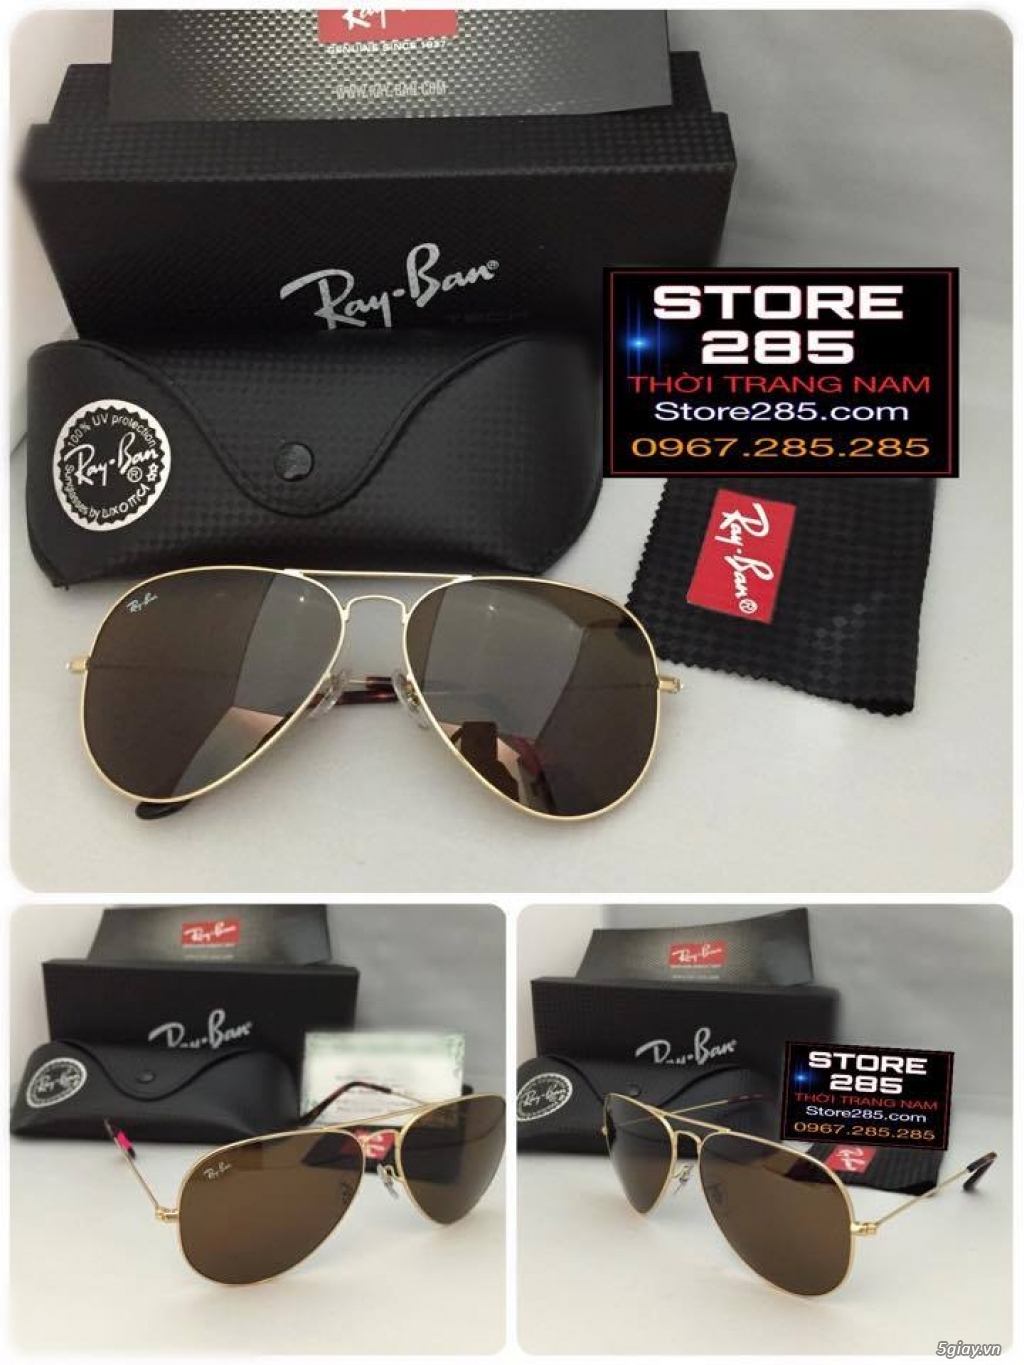 Shop285 Giá tốt 5giay: Chuyên mắt kính Rayban,thắt lưng,bóp da,Hàng XT USA,Sing,HK - 26